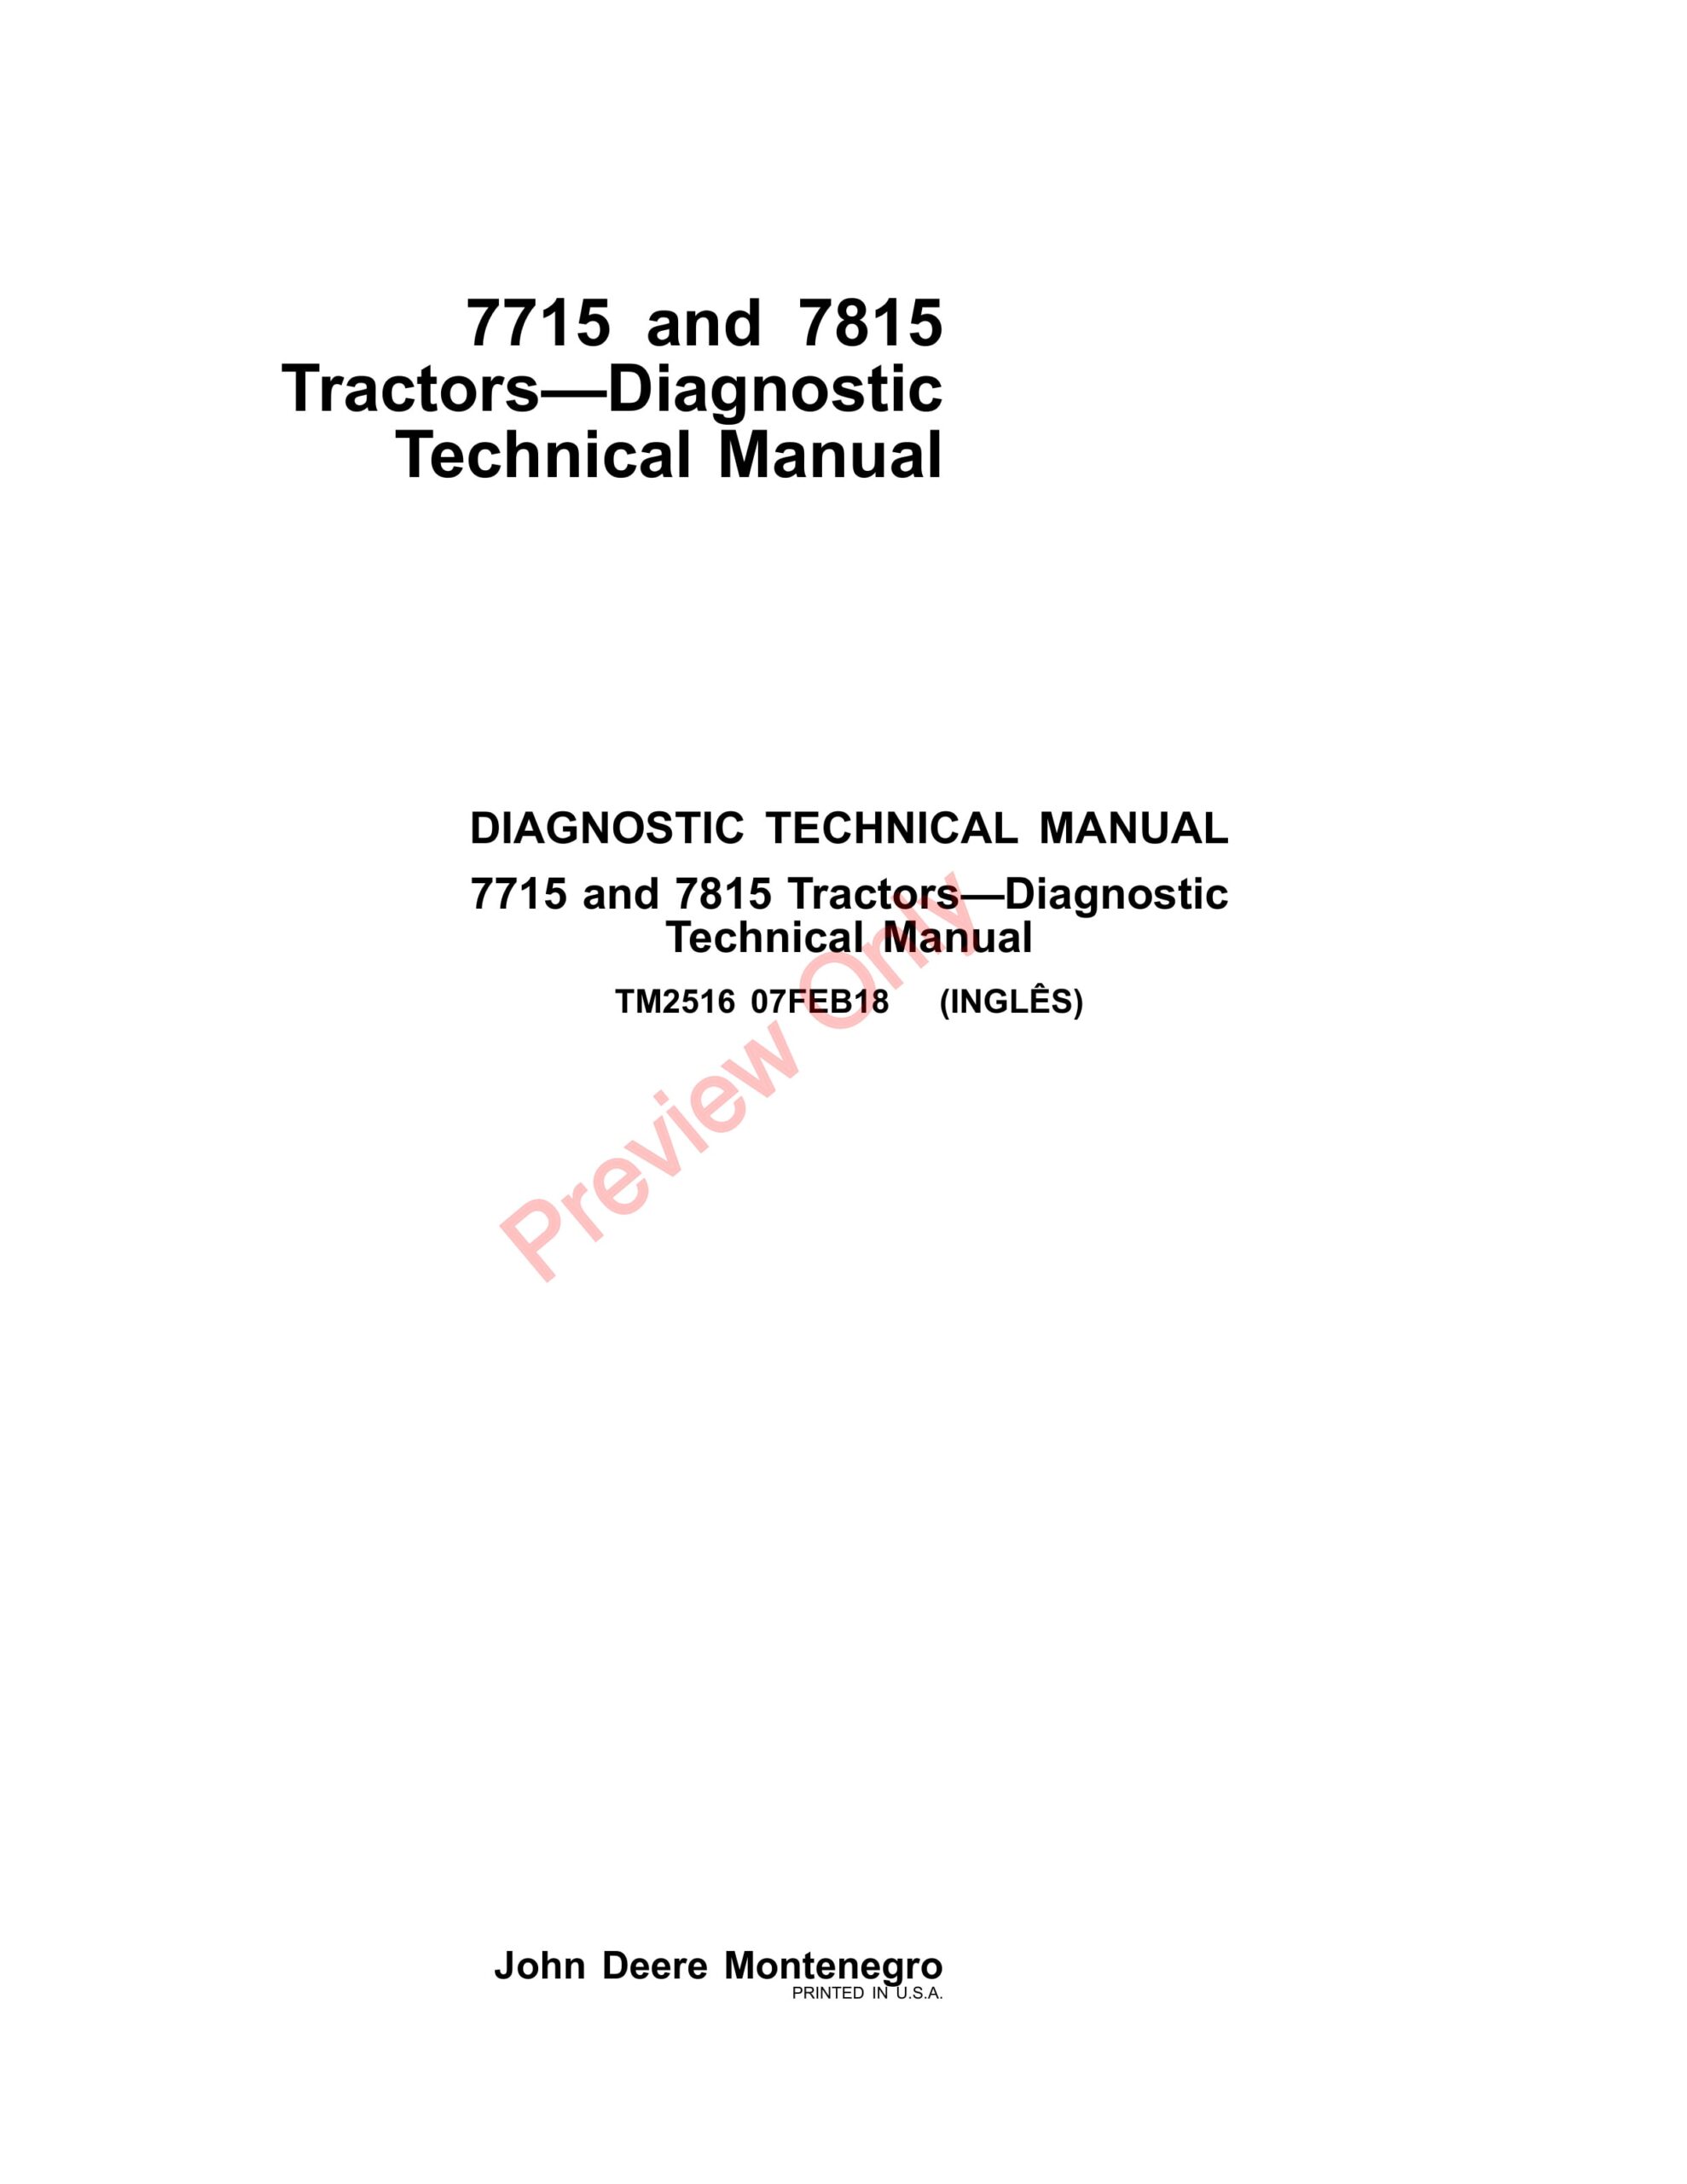 John Deere 7715 and 7815 Tractors Diagnostic Technical Manual TM2516 07FEB18-1